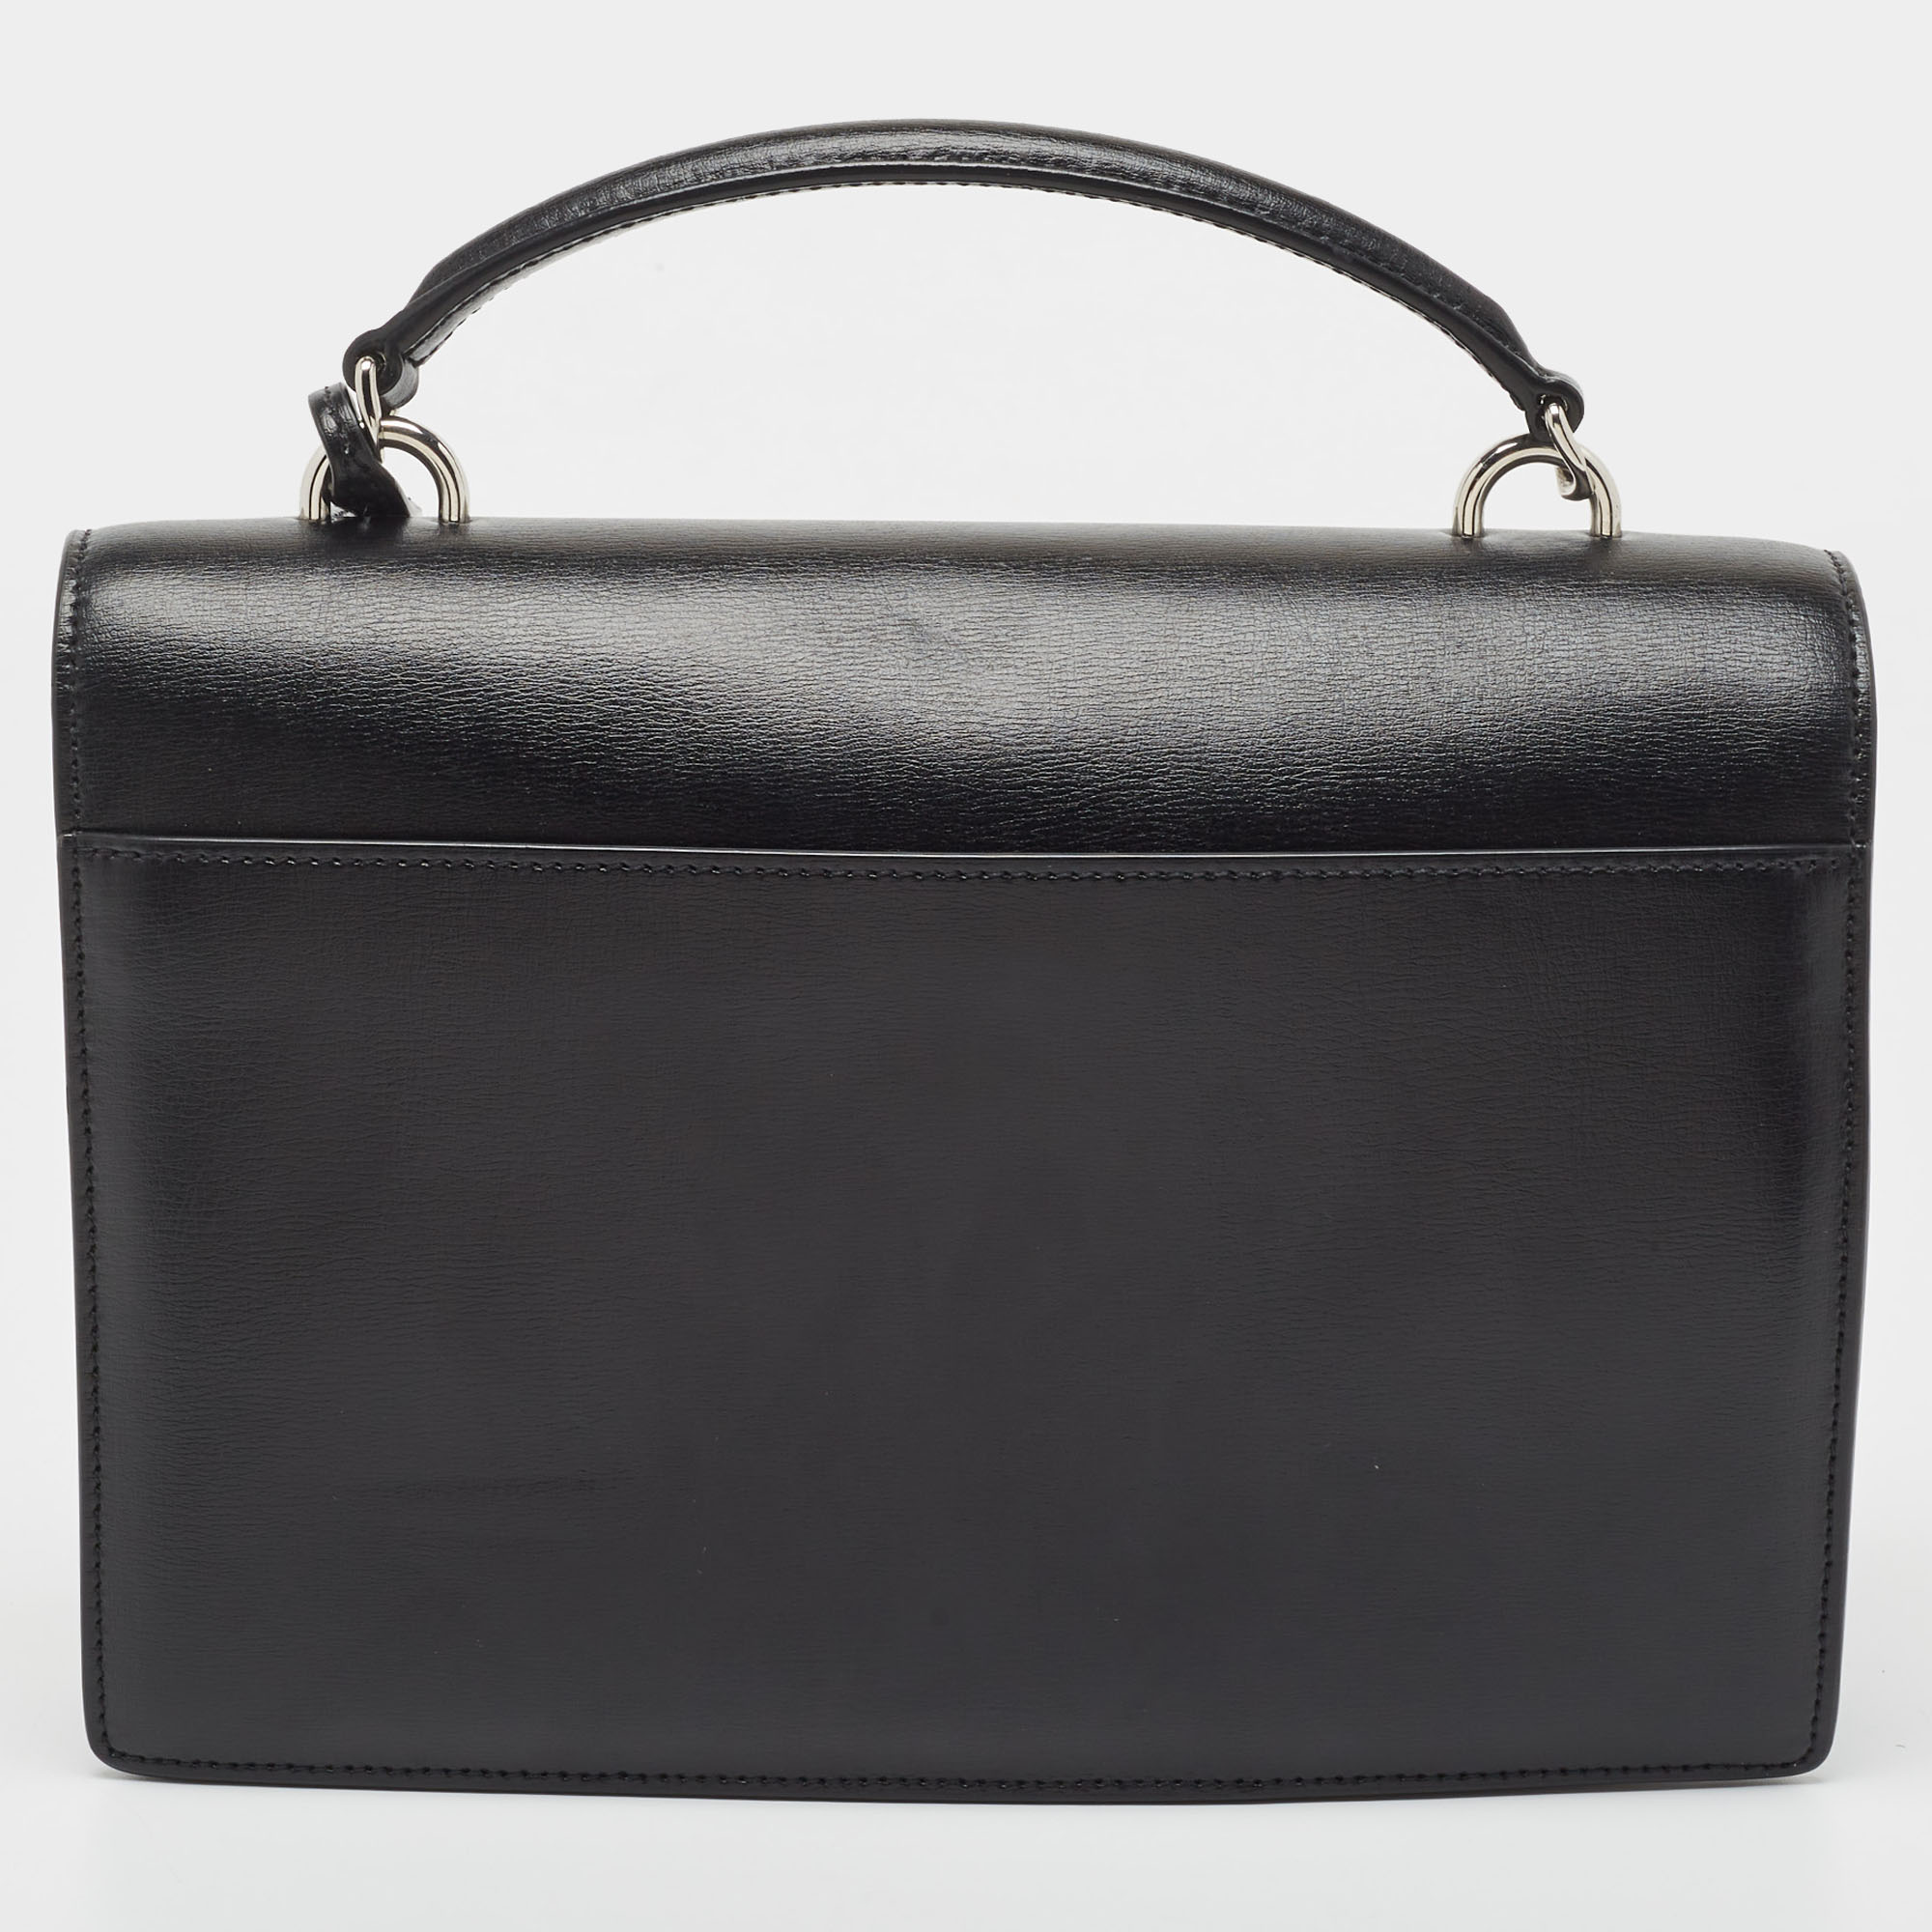 Saint Laurent Black Leather Large Sunset Shoulder Bag